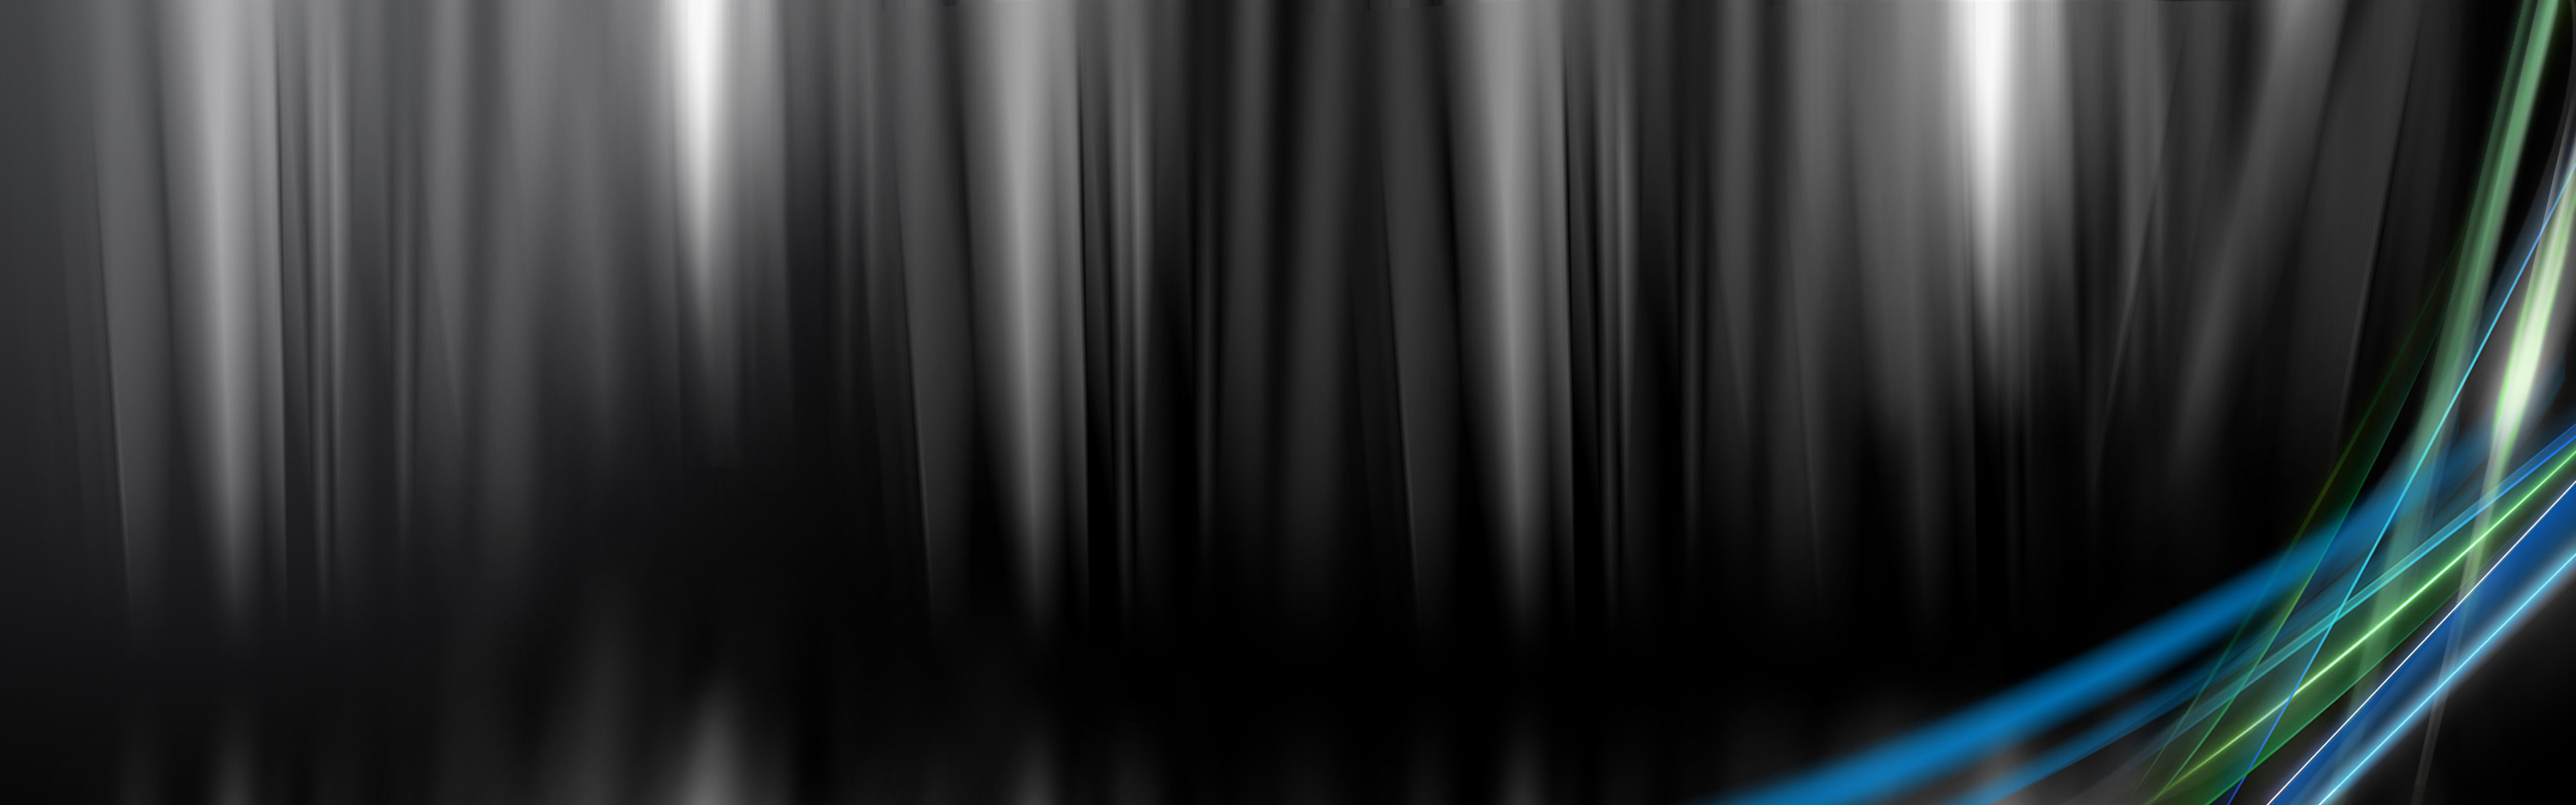 Nền đen" - 51.137.048 Ảnh, vector và hình chụp có sẵn | Shutterstock